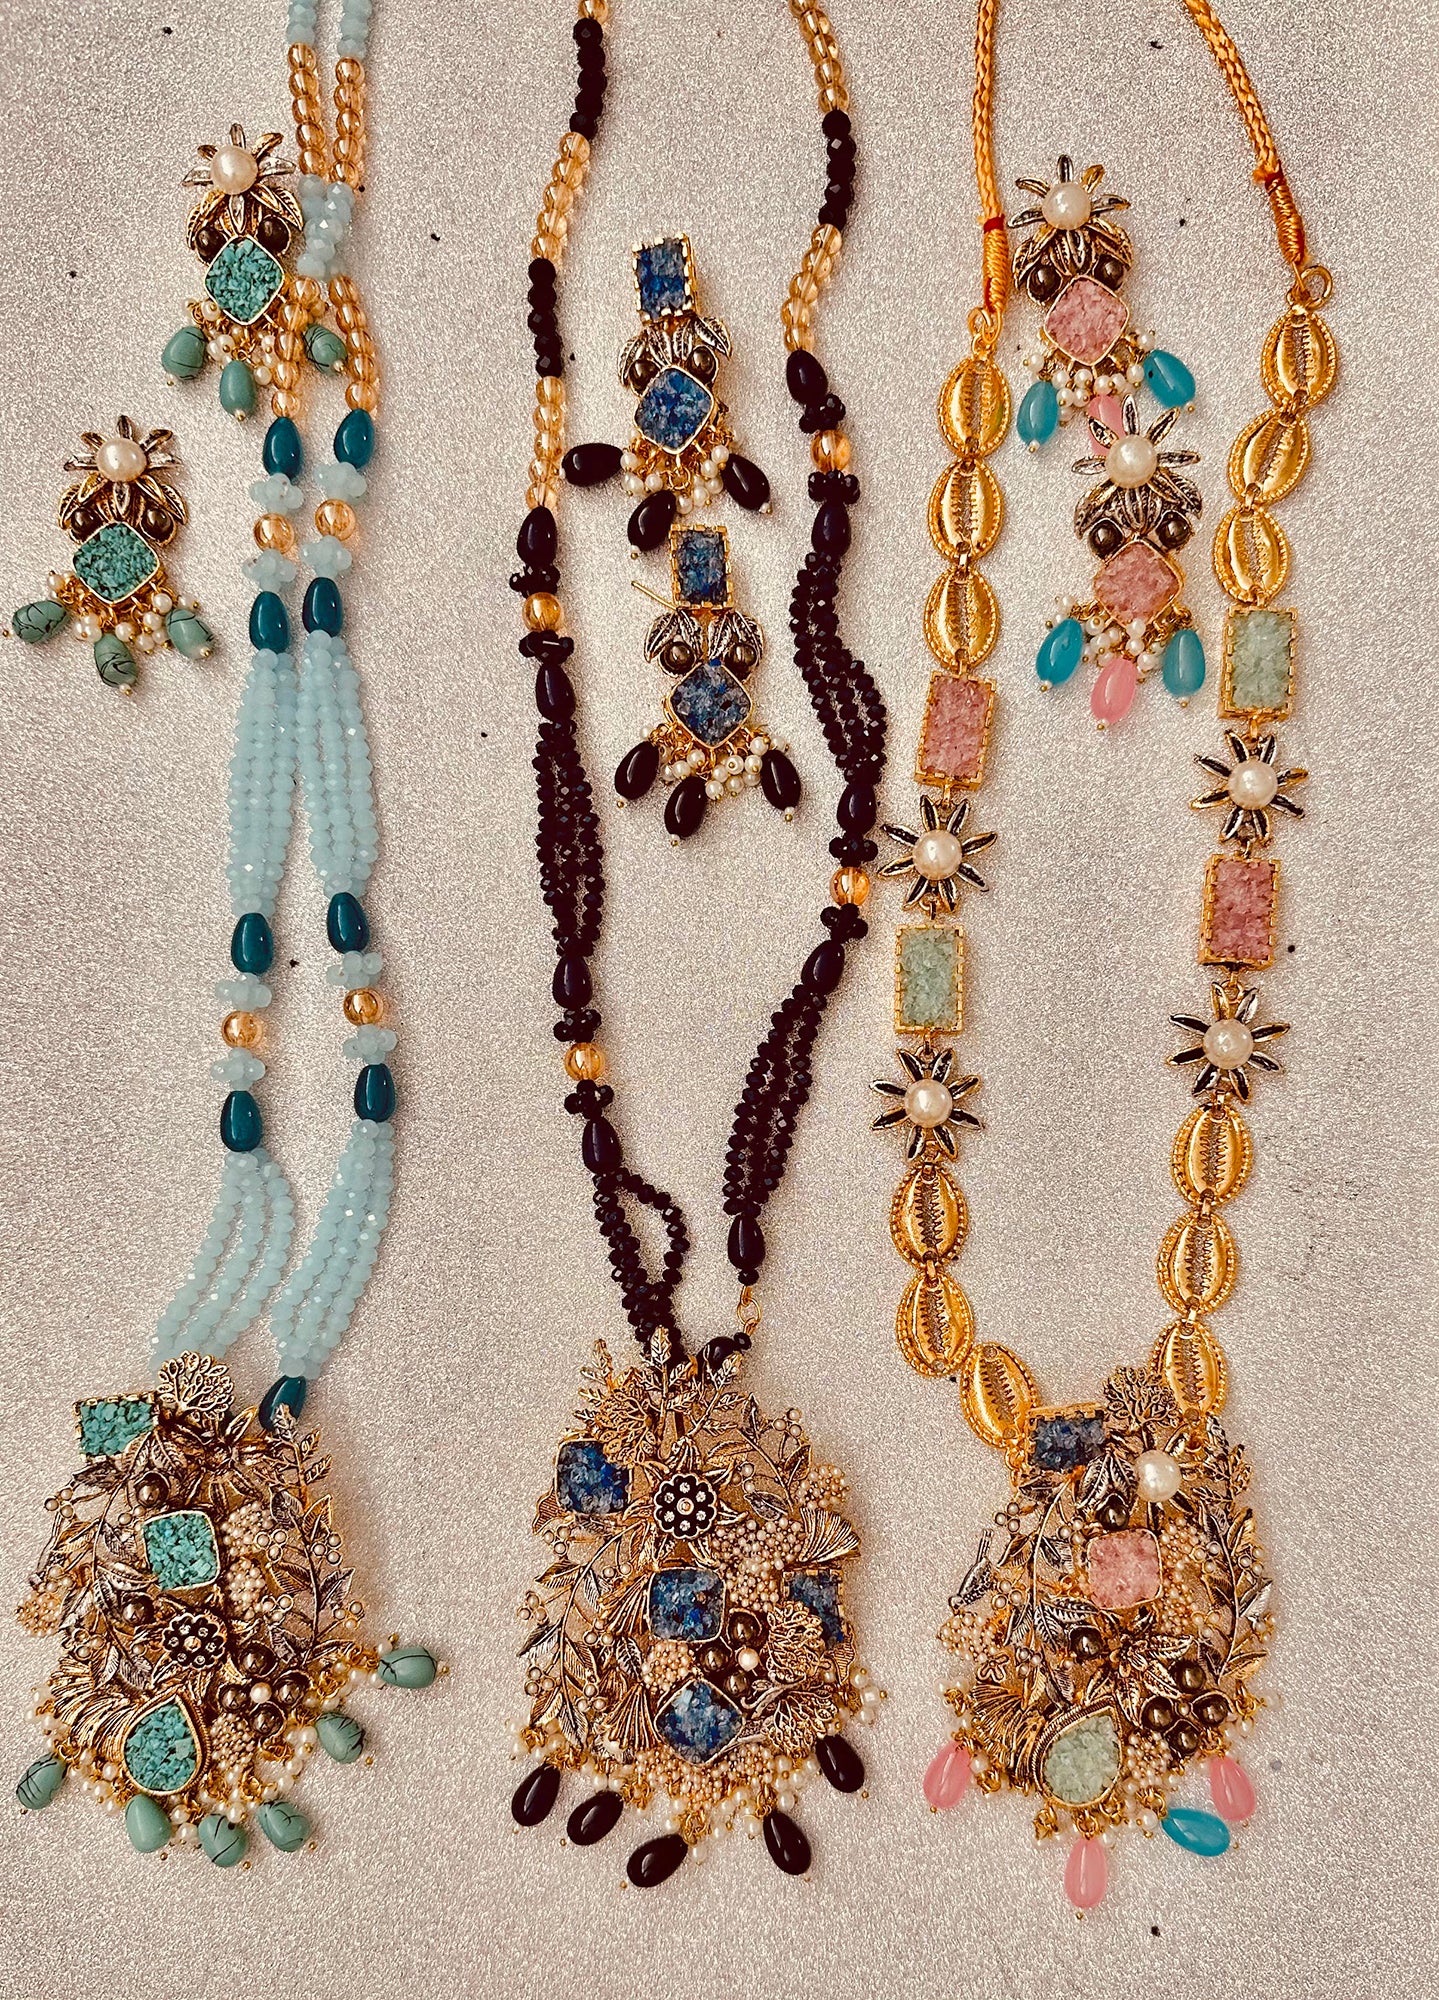 Crush stones jewelry pendant set